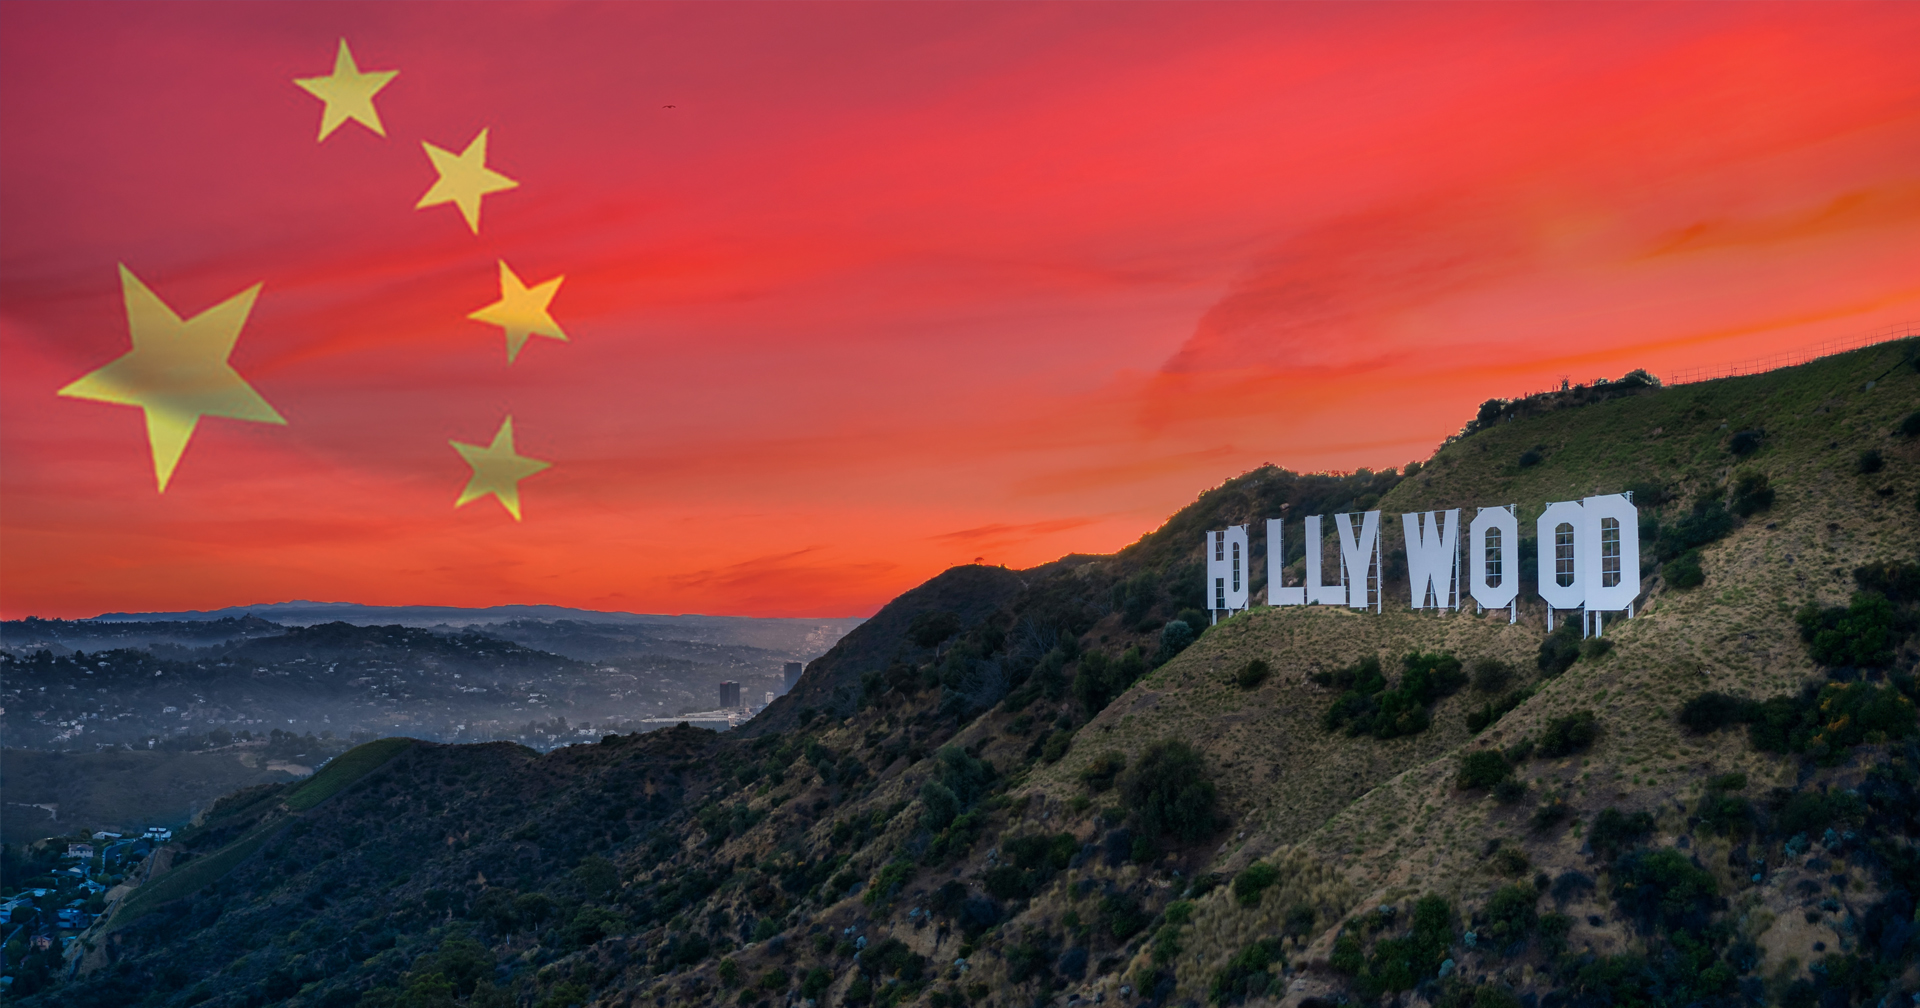 จีนส่งจดหมายถึง ‘ฮอลลีวูด’ ย้ำหนังที่จะสร้างต้อง ‘เคารพวัฒนธรรมจีน’ ด้วย